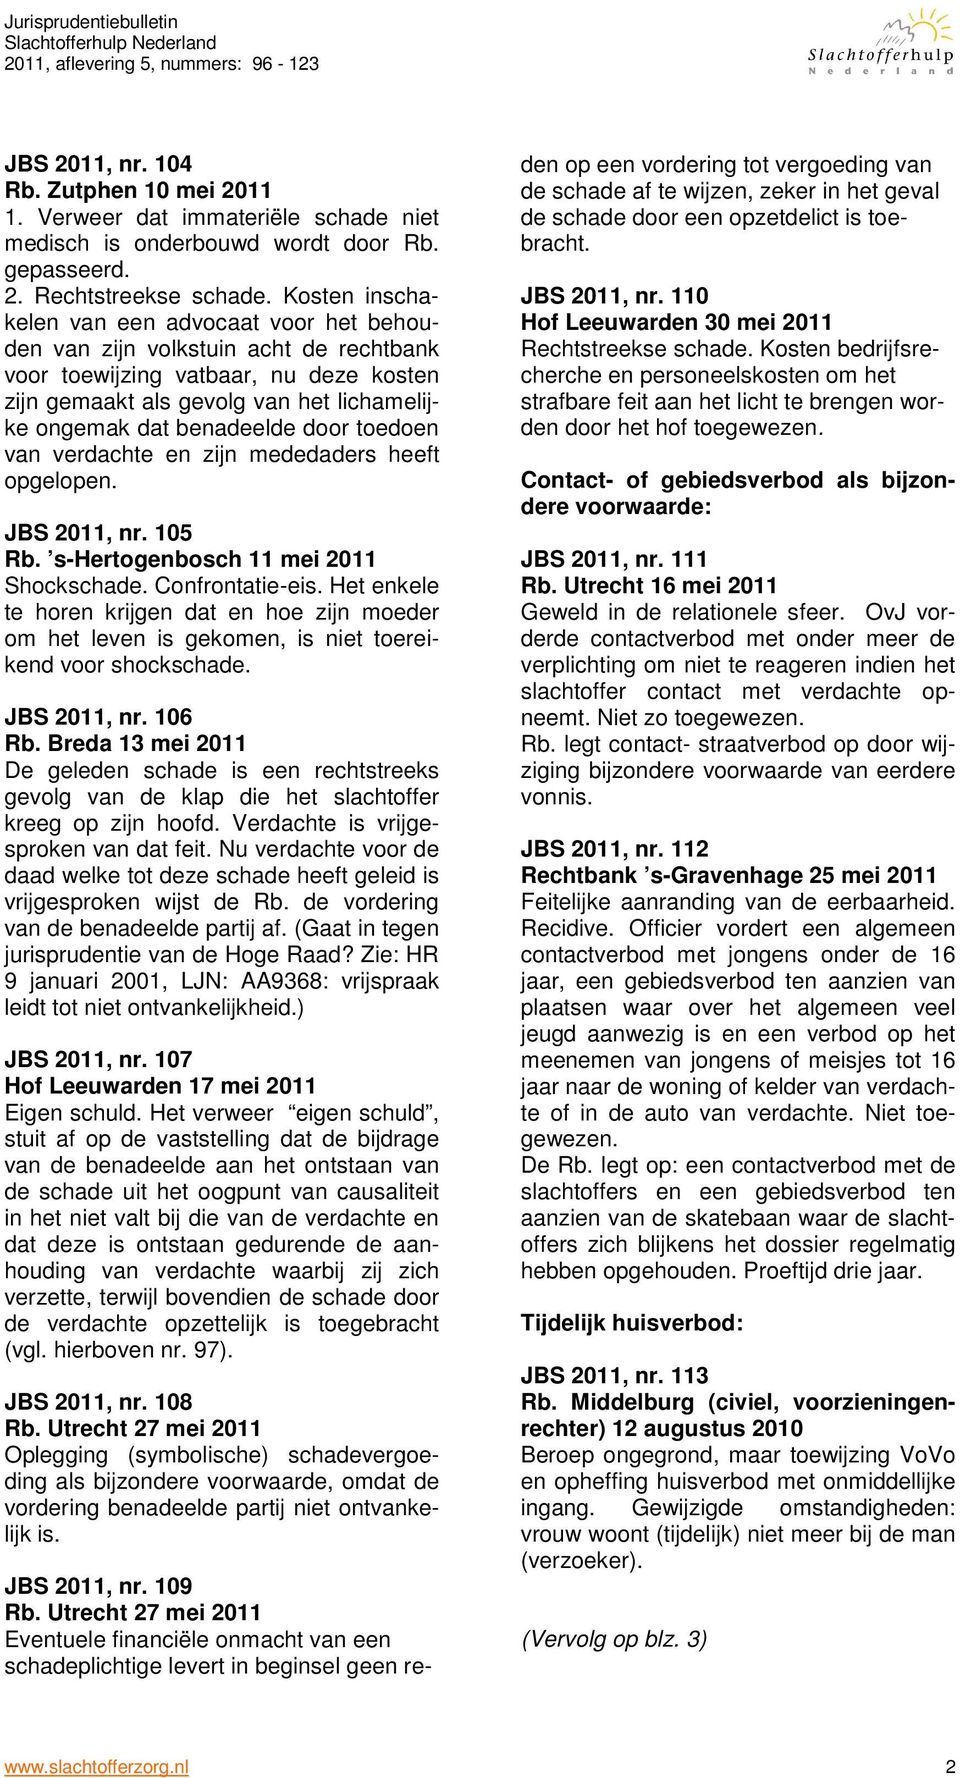 door toedoen van verdachte en zijn mededaders heeft opgelopen. JBS 2011, nr. 105 Rb. s-hertogenbosch 11 mei 2011 Shockschade. Confrontatie-eis.